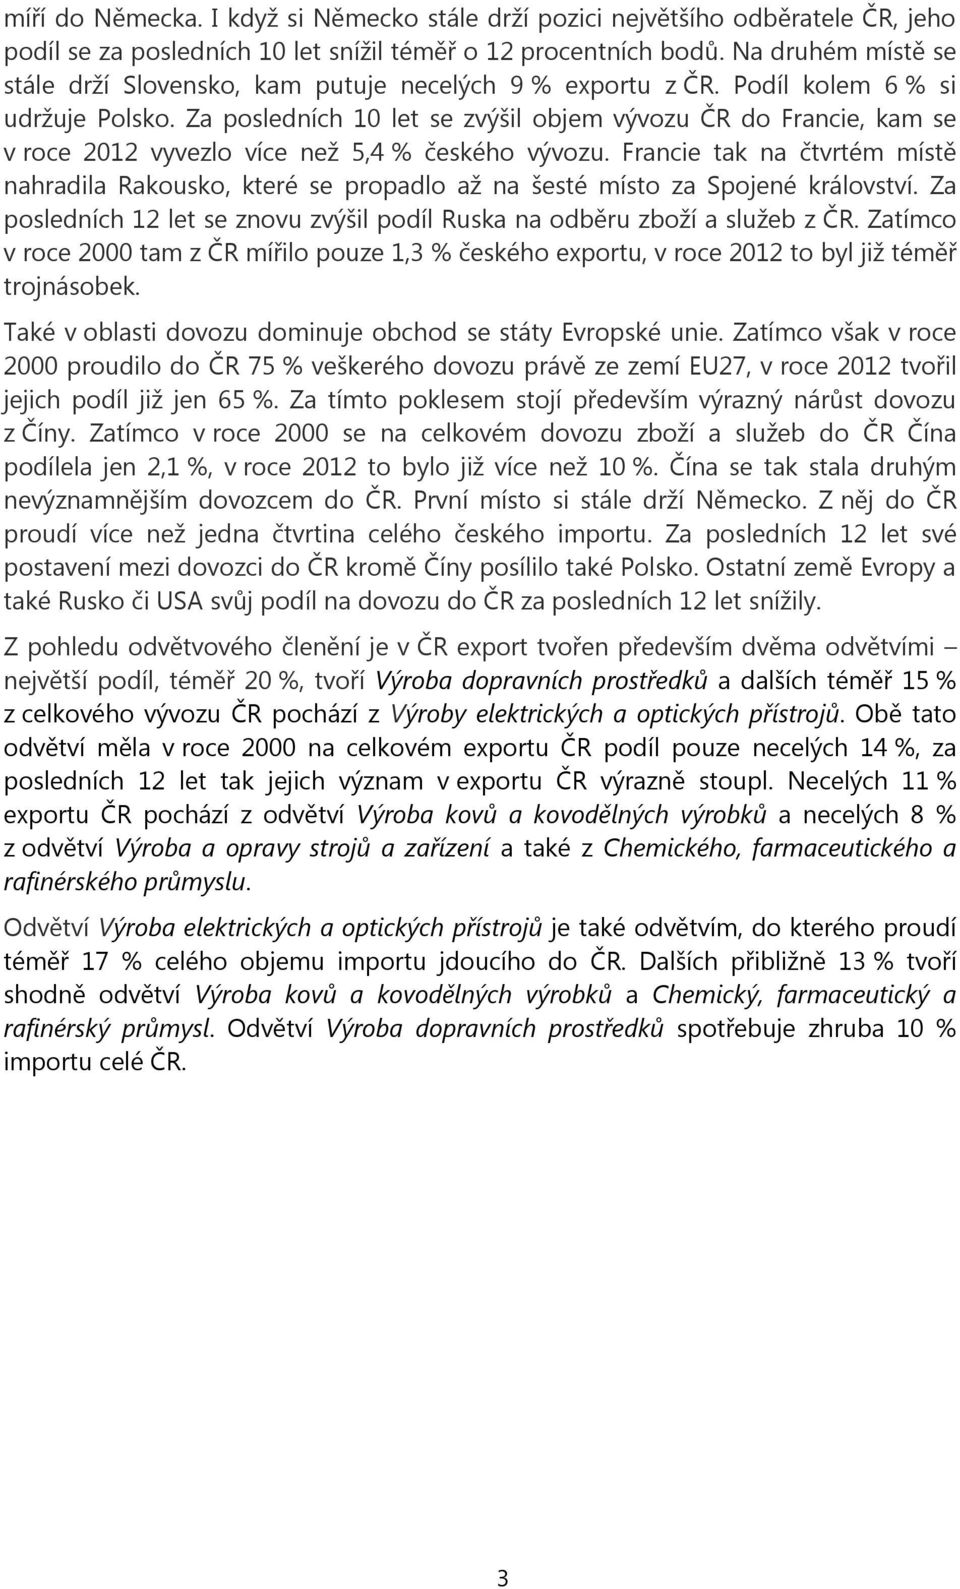 Za posledních 10 let se zvýšil objem vývozu ČR do Francie, kam se v roce 2012 vyvezlo více než 5,4 % českého vývozu.